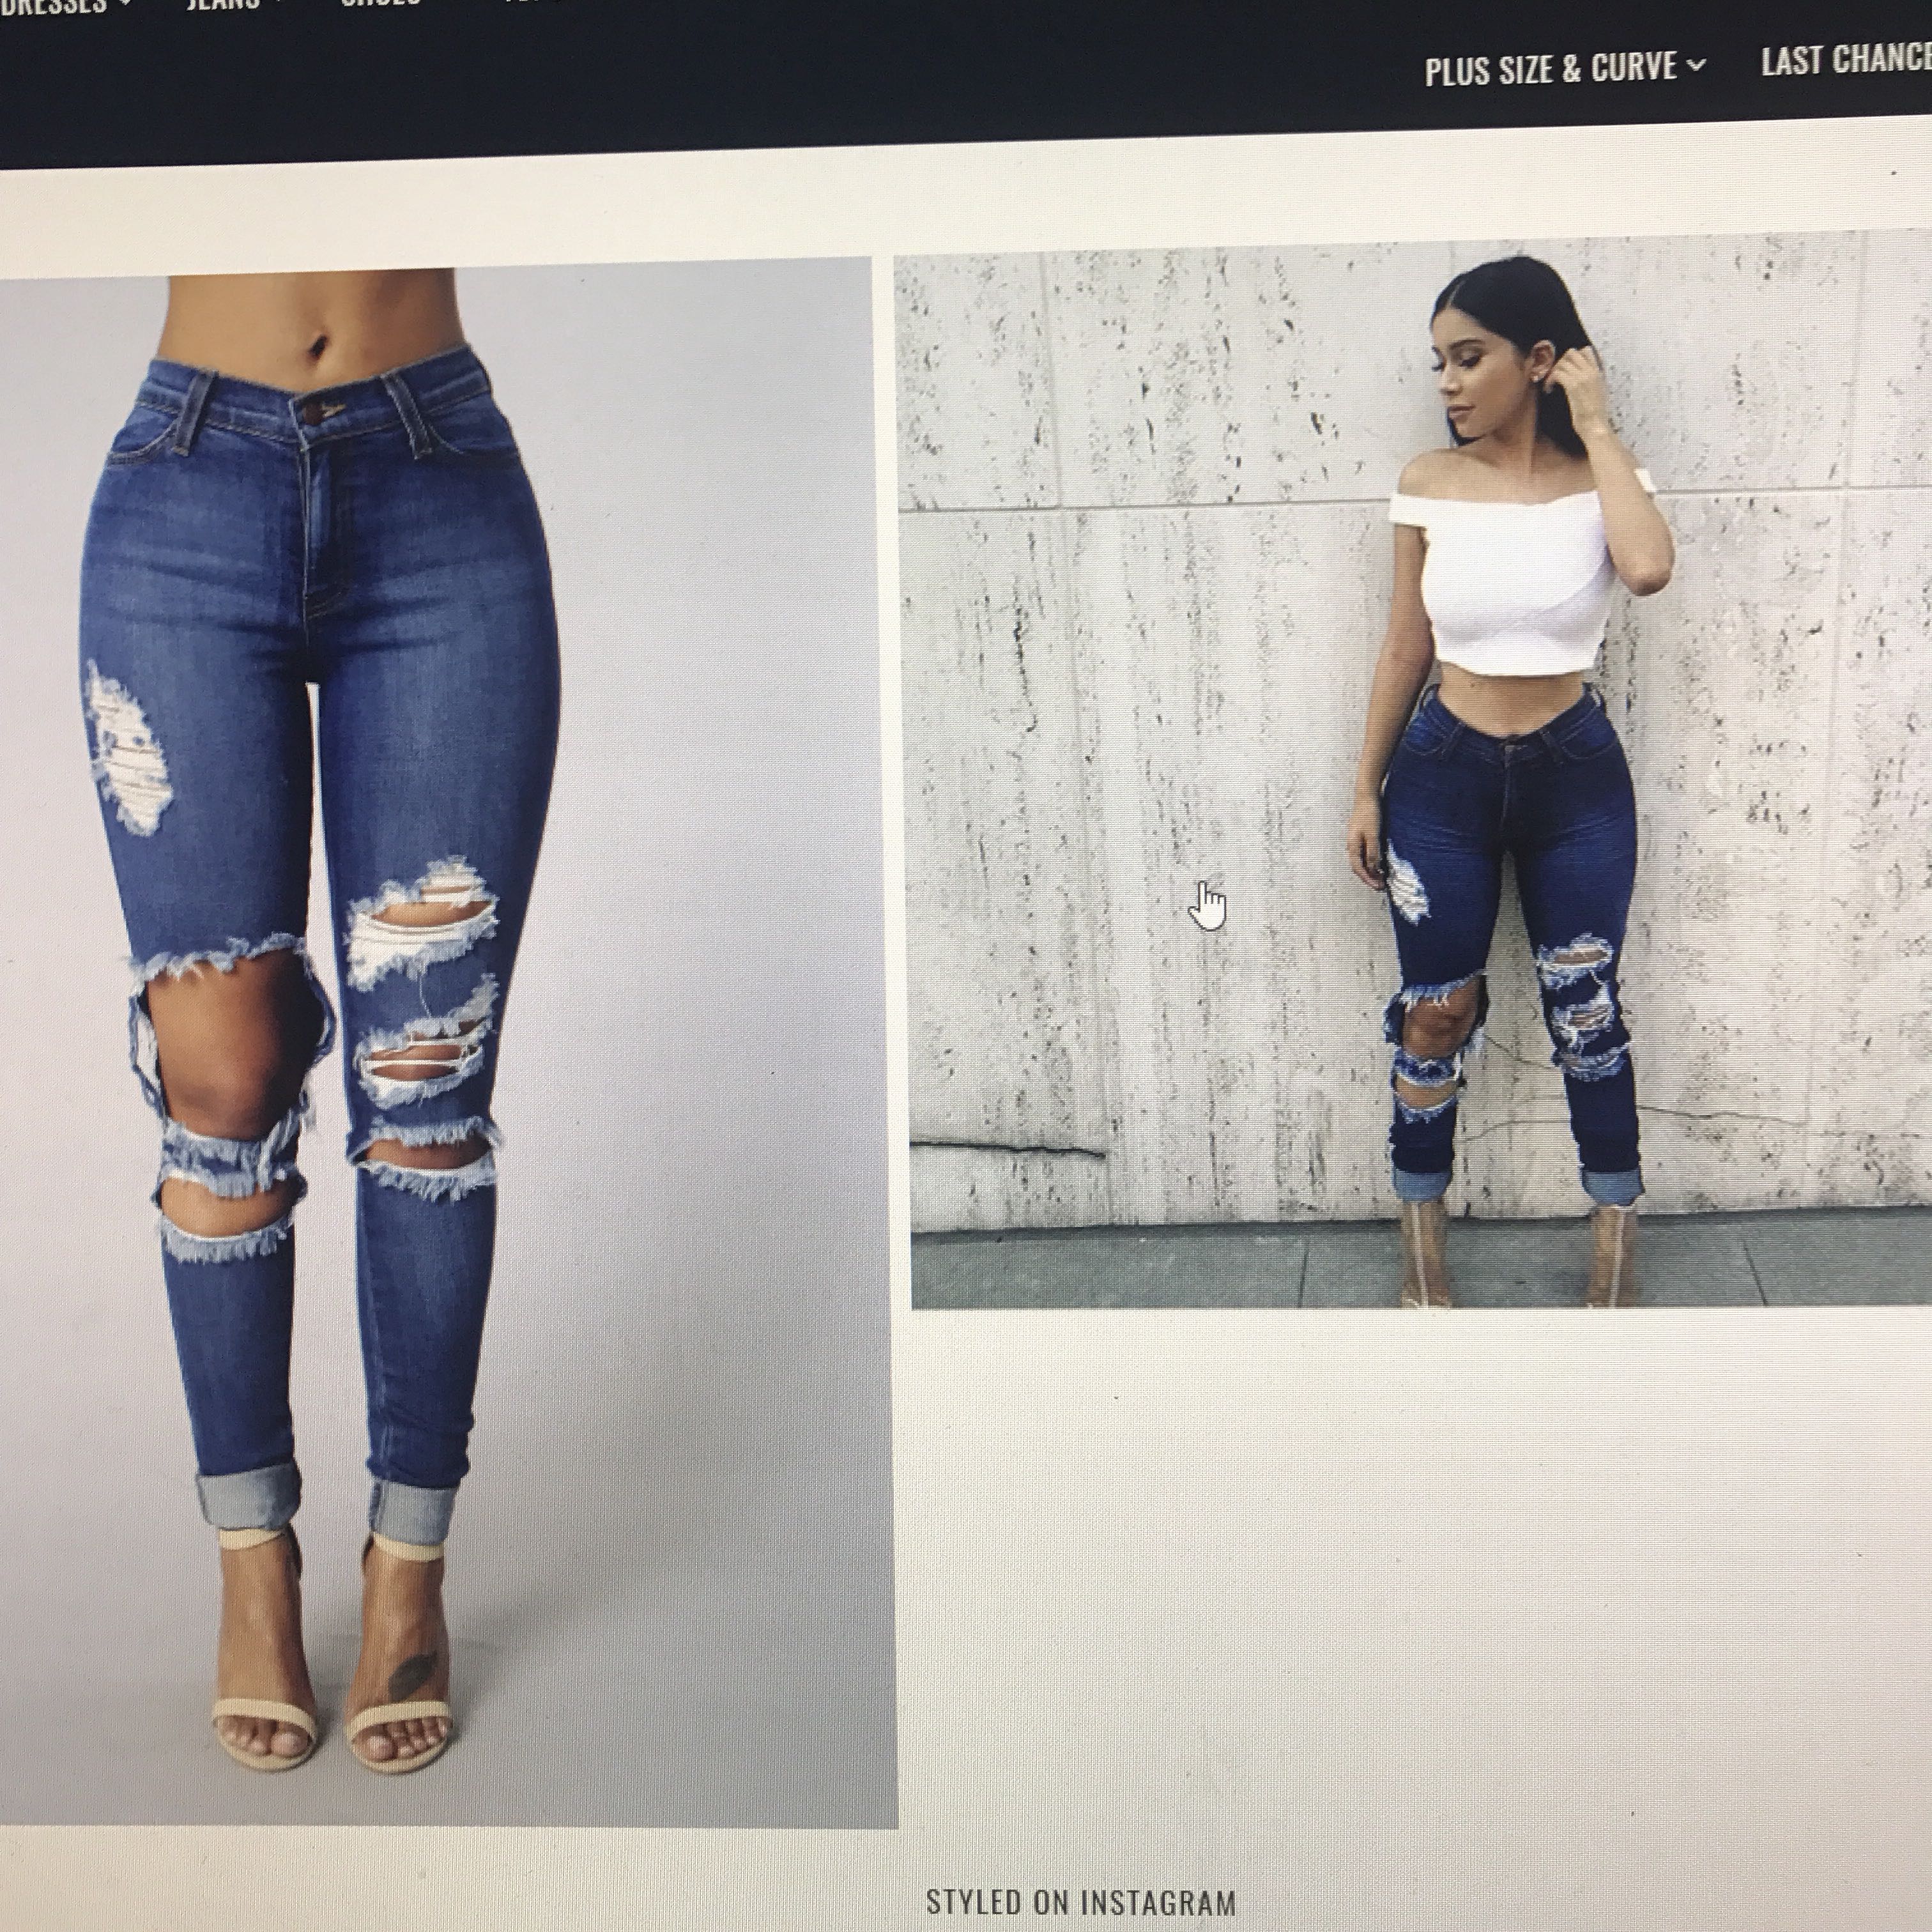 ripped jeans women's fashion nova